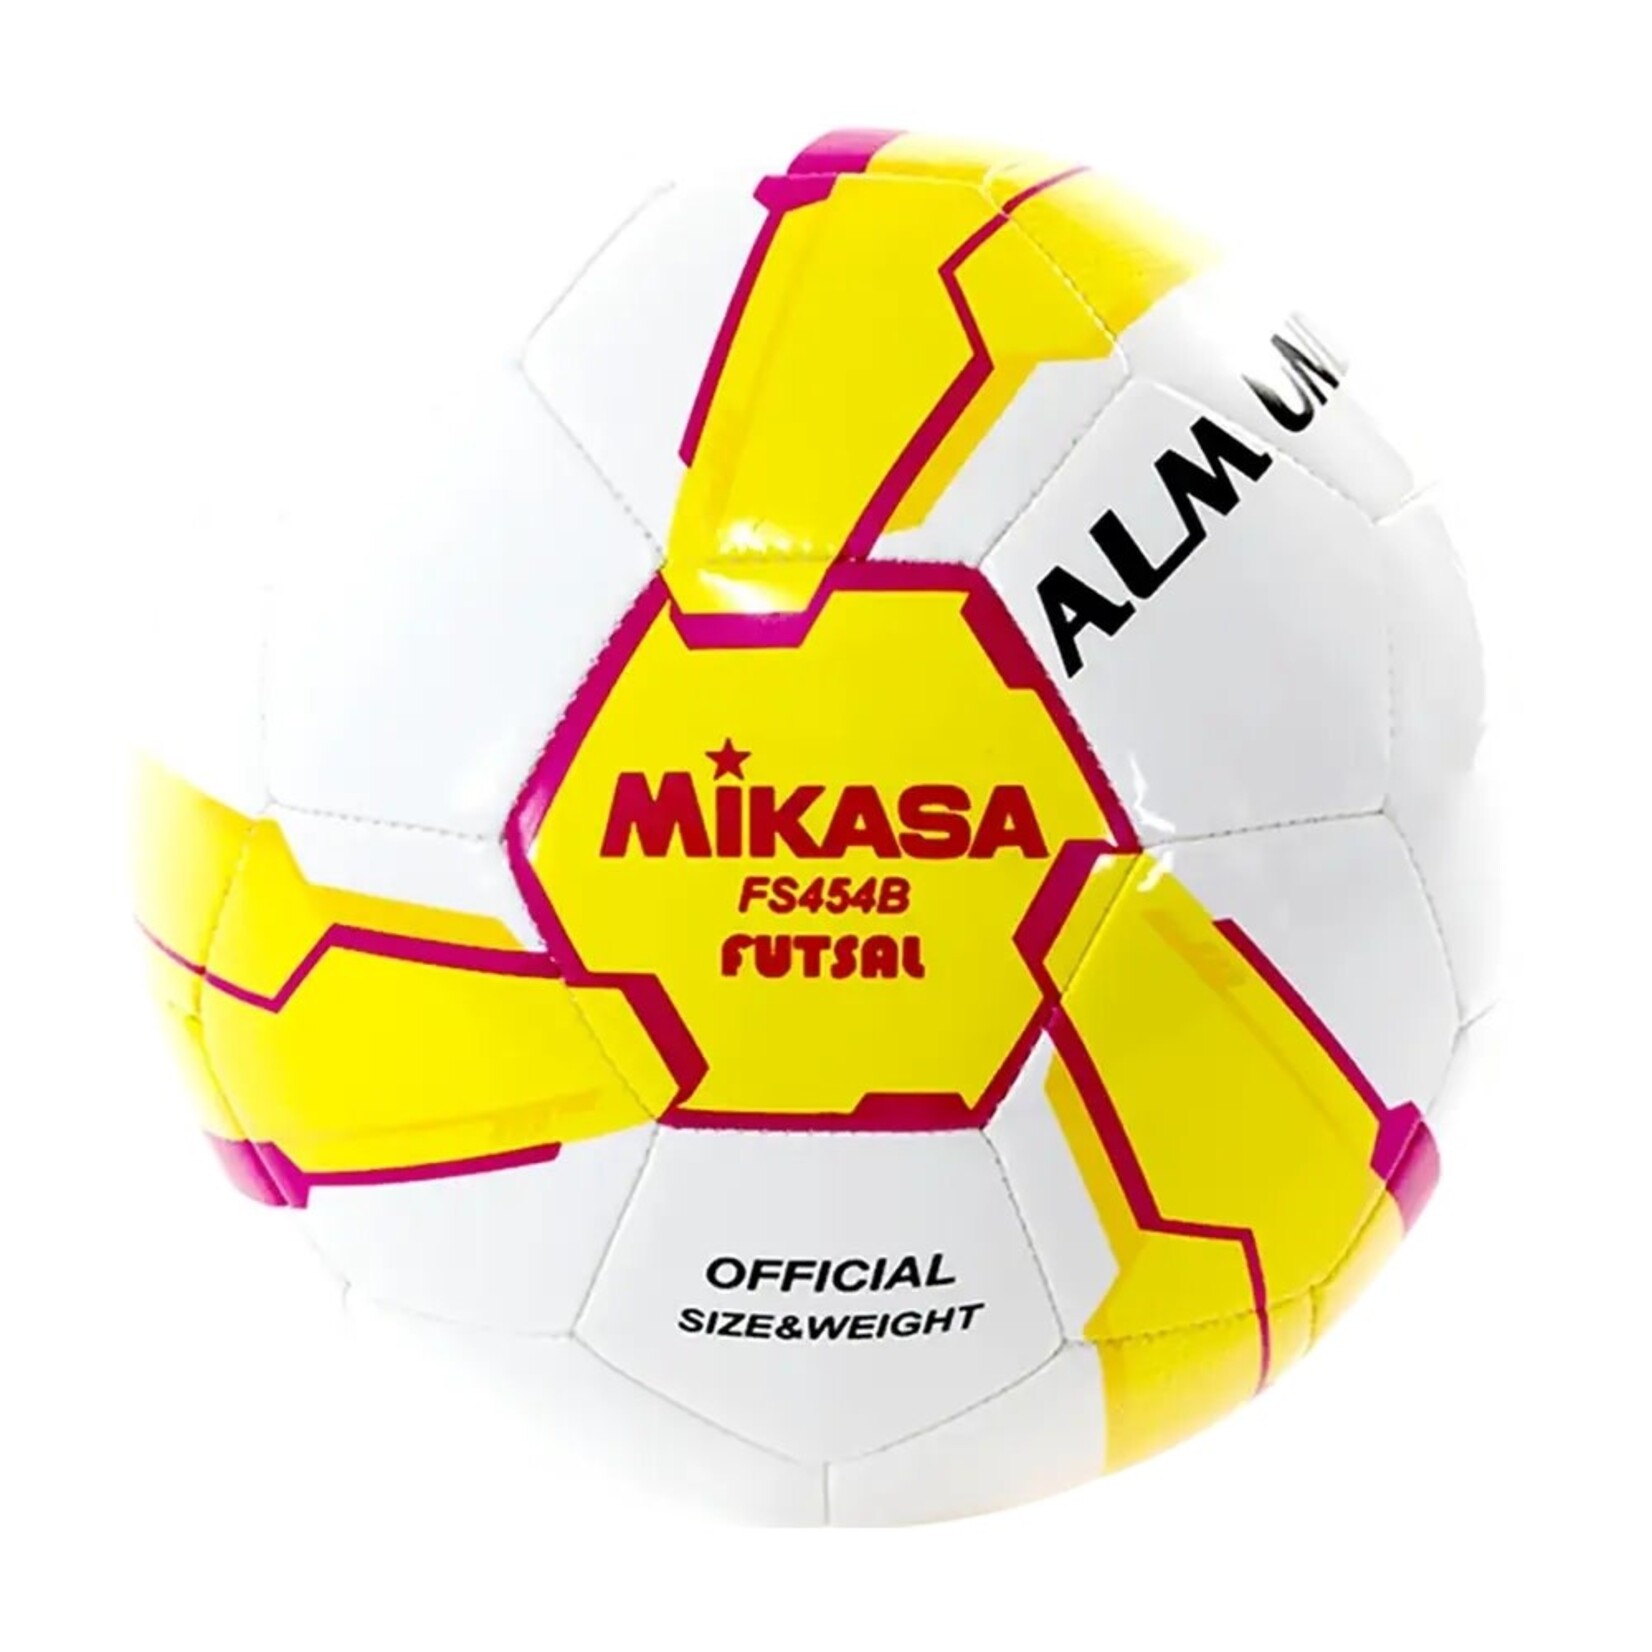 Mikasa Futsal, low bounce, stitched, adult size, white/orange/pink